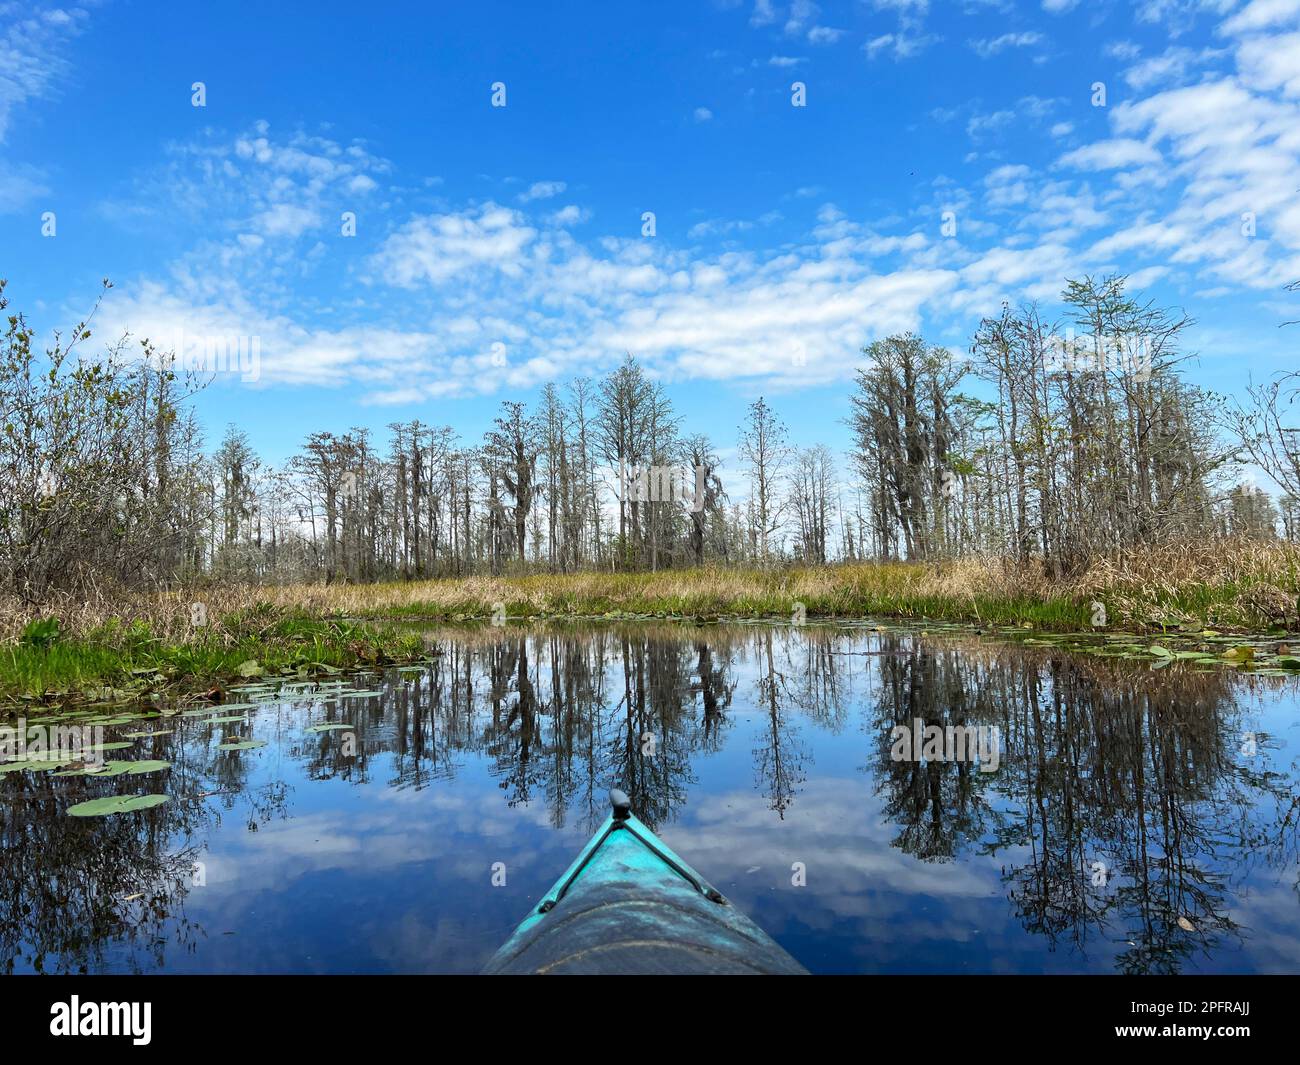 Un kayakiste admire le paysage apaisant de la réserve naturelle nationale d'Okefenokee, le plus grand marais d'Amérique du Nord. Banque D'Images